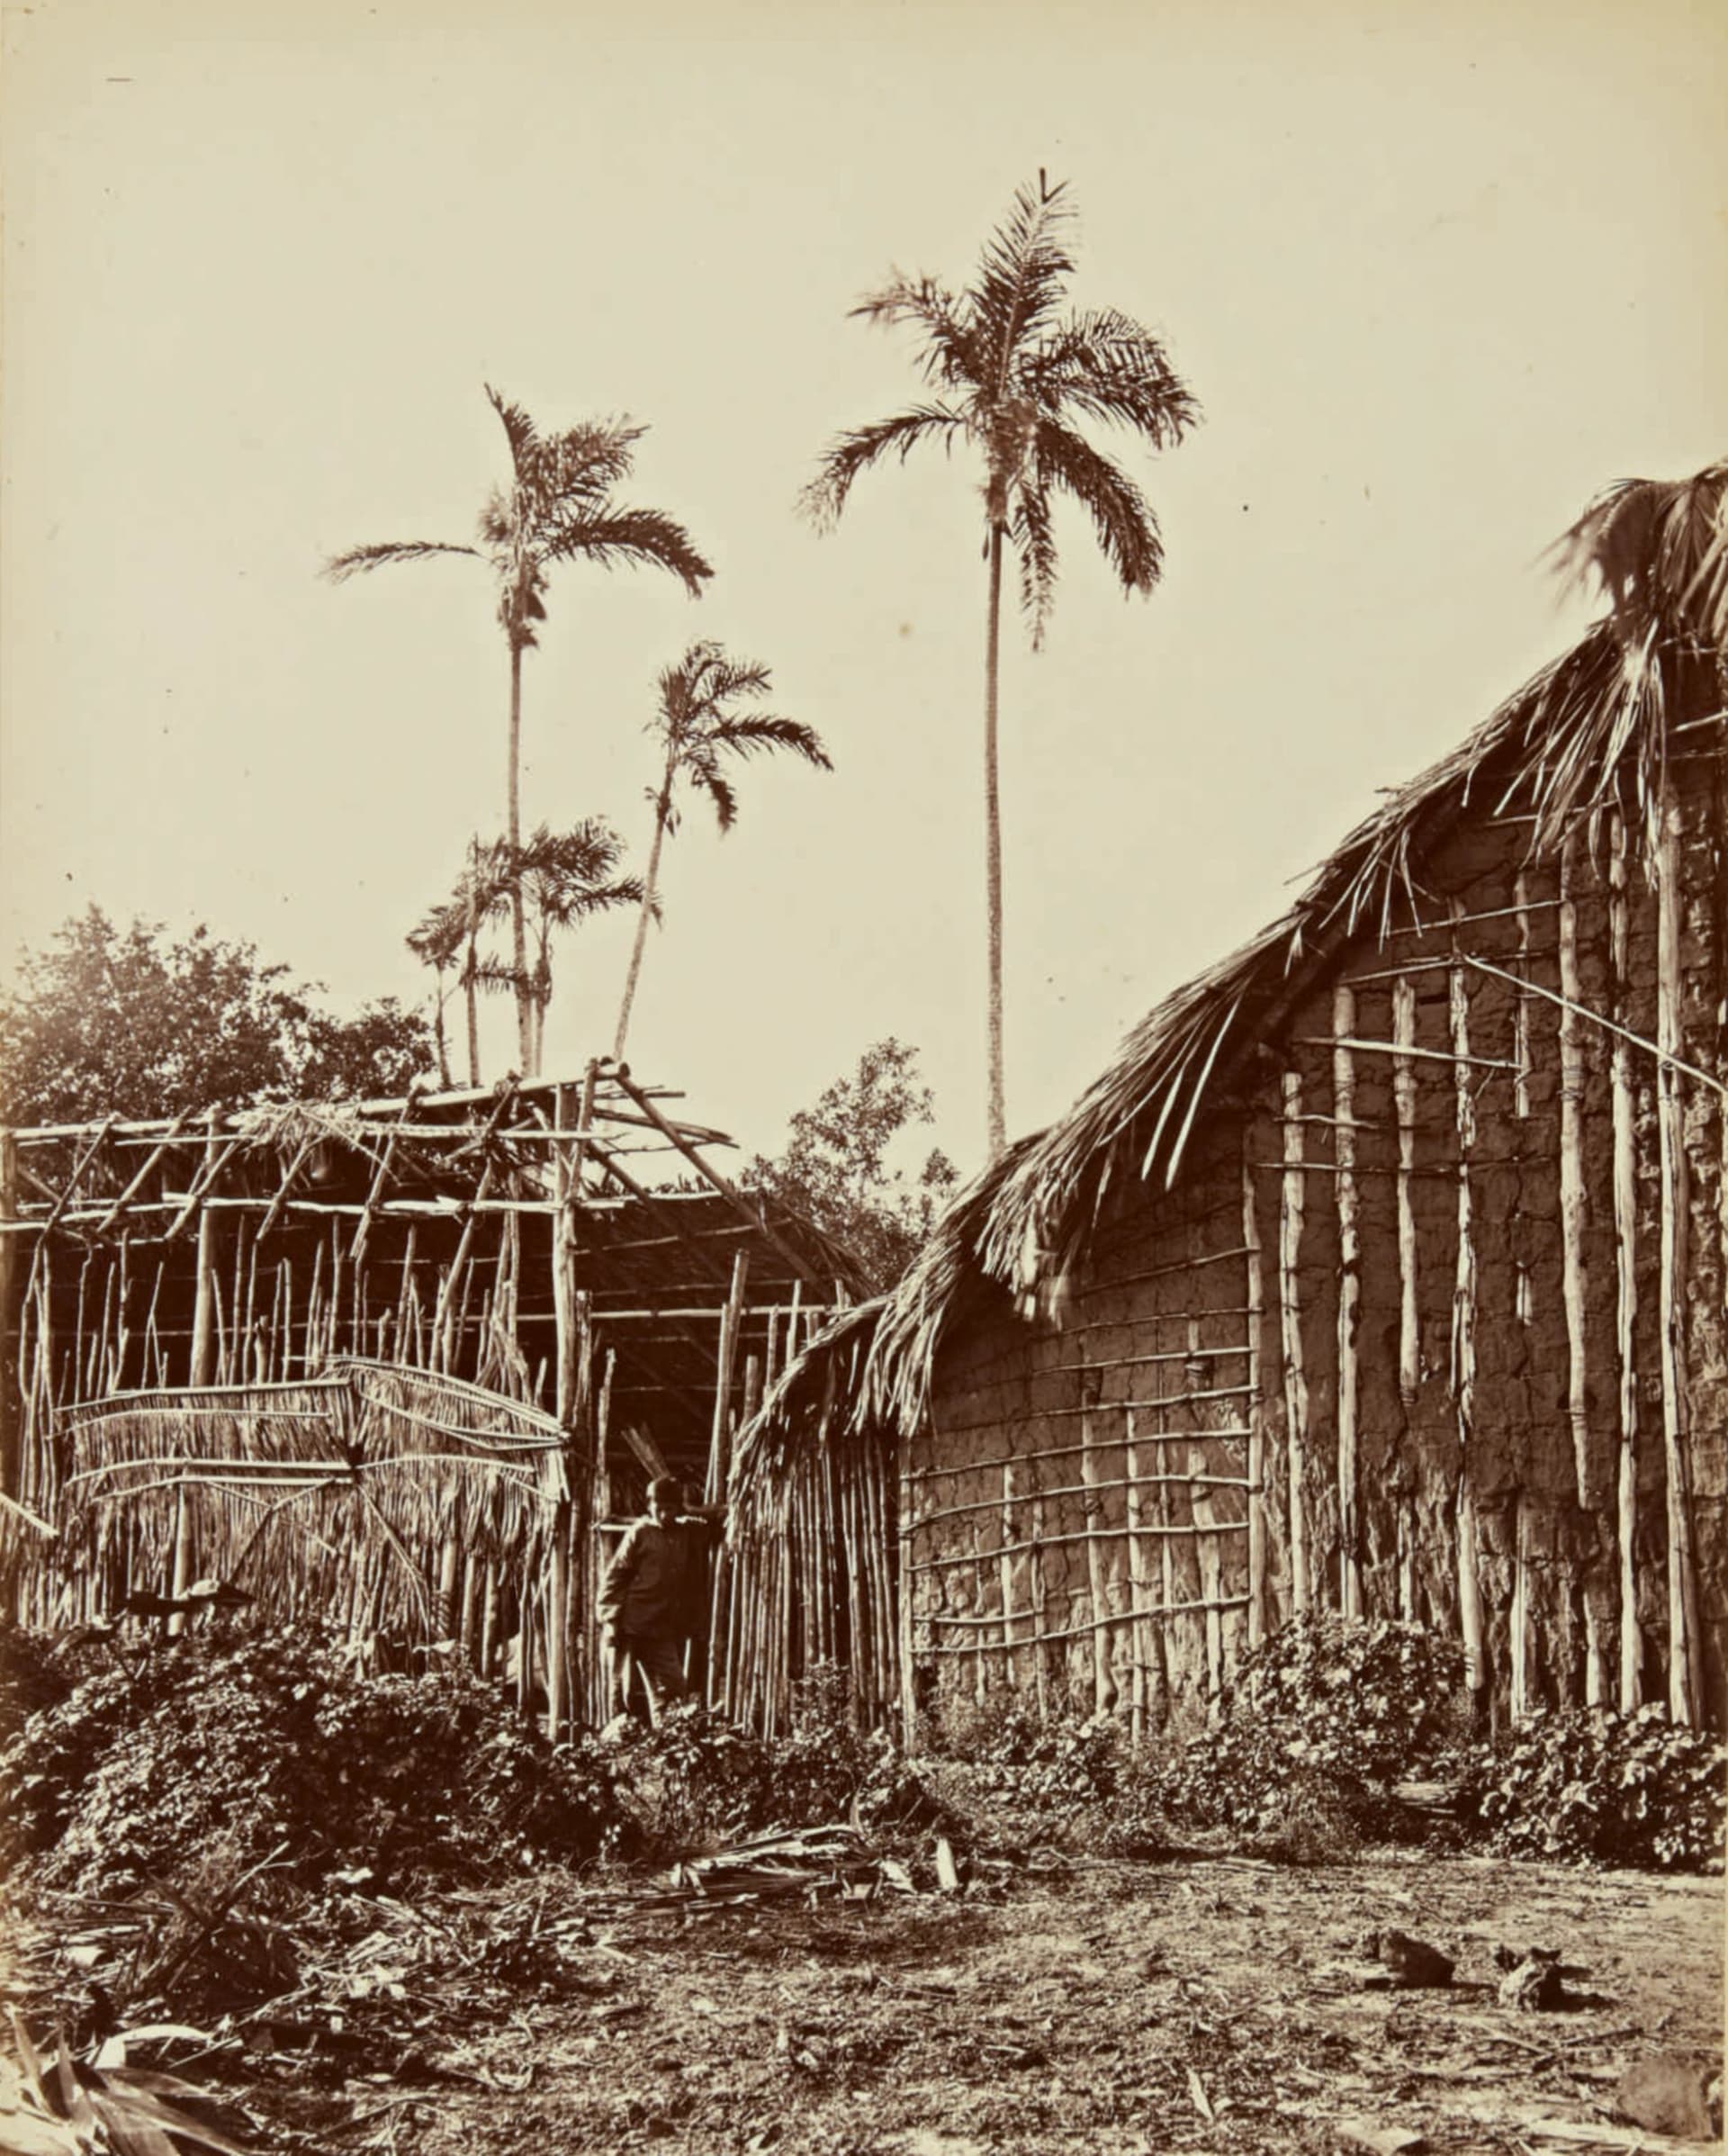 صور نادرة من القرن التاسع عشر تبين الماضي المزدهر لغابات الأمازون